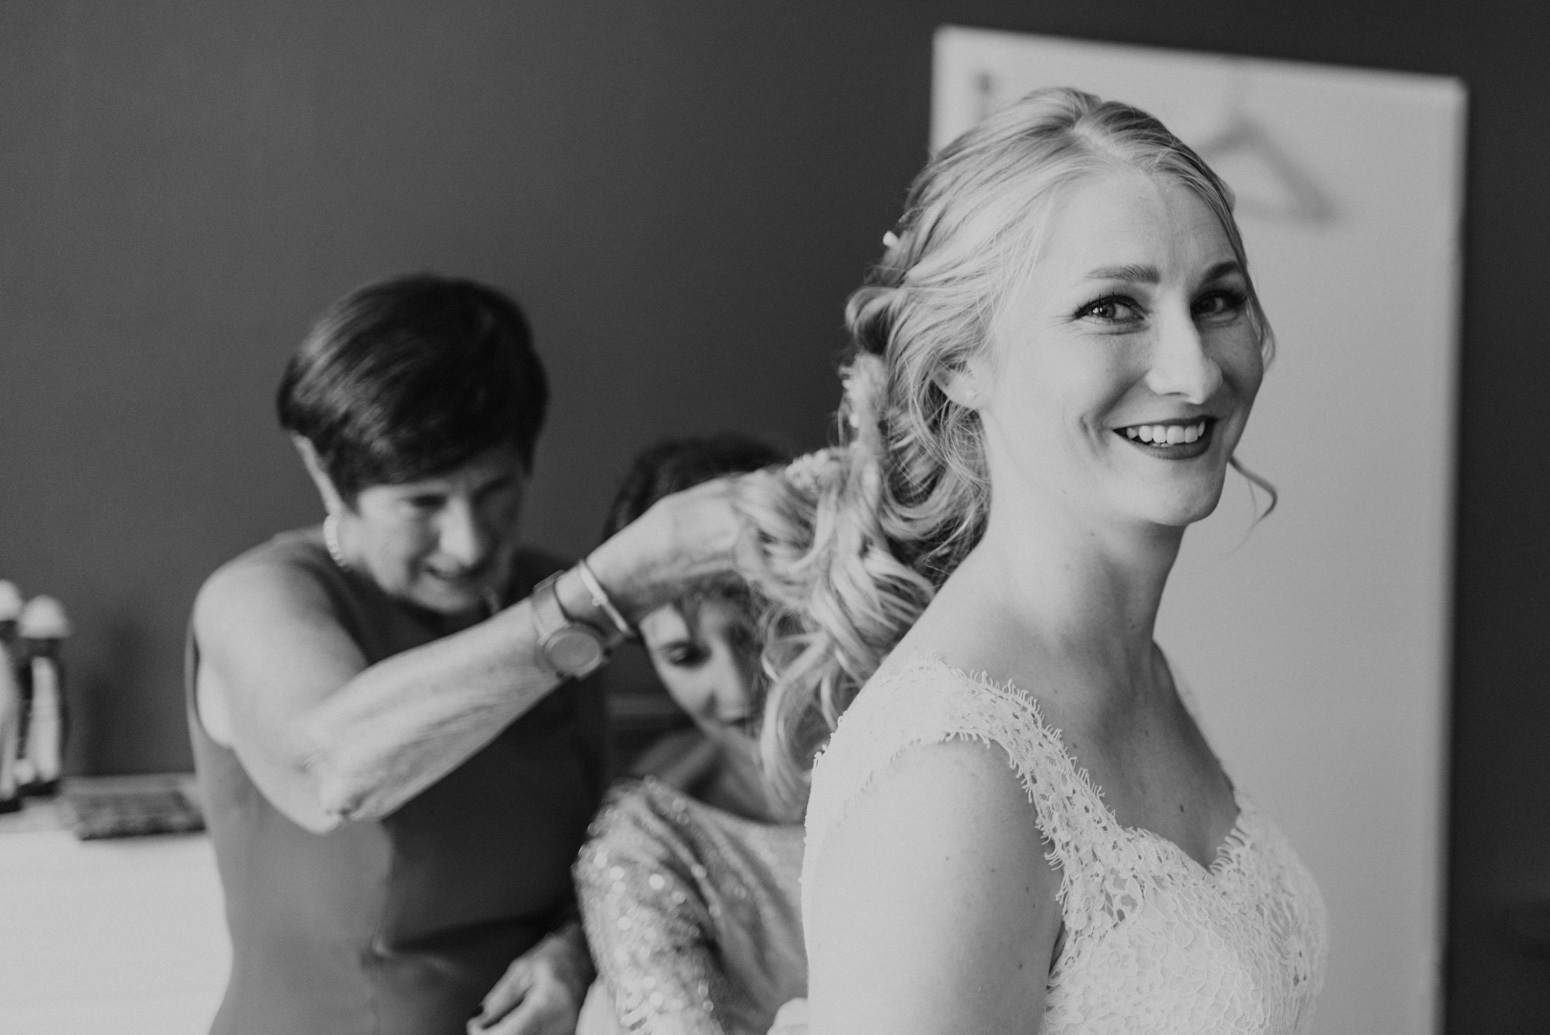 Freunde und Familie helfen der Braut beim Getting Ready. Hochzeitsfotografin Daria Becker von Genuine Bonds aus Bonn